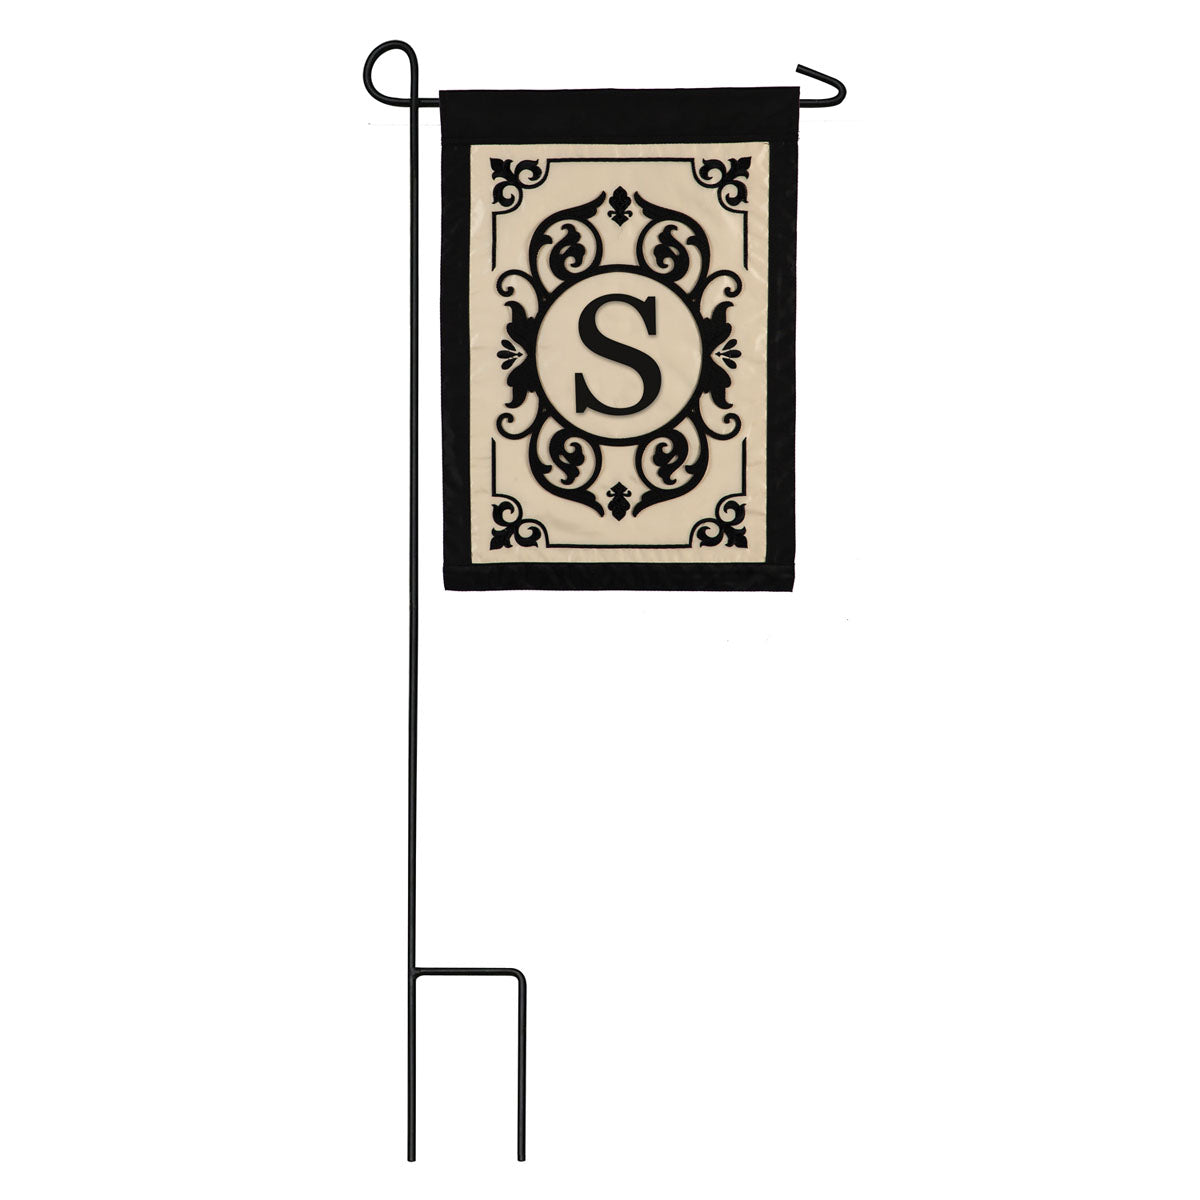 Cambridge Monogram Garden Applique Flag, "S"